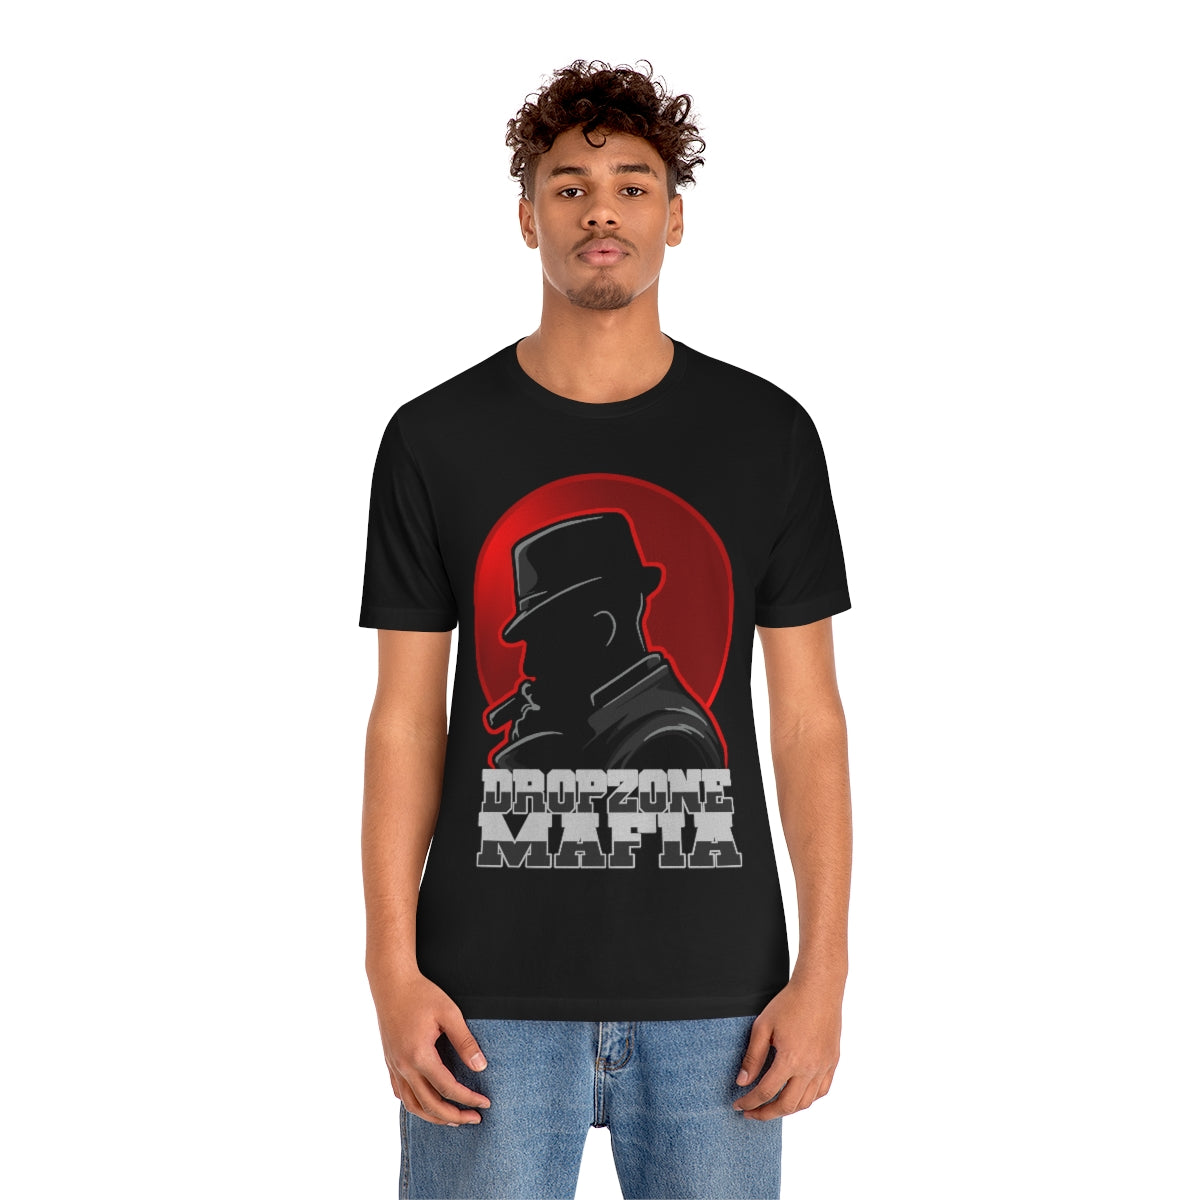 DropZone Mafia T-Shirt